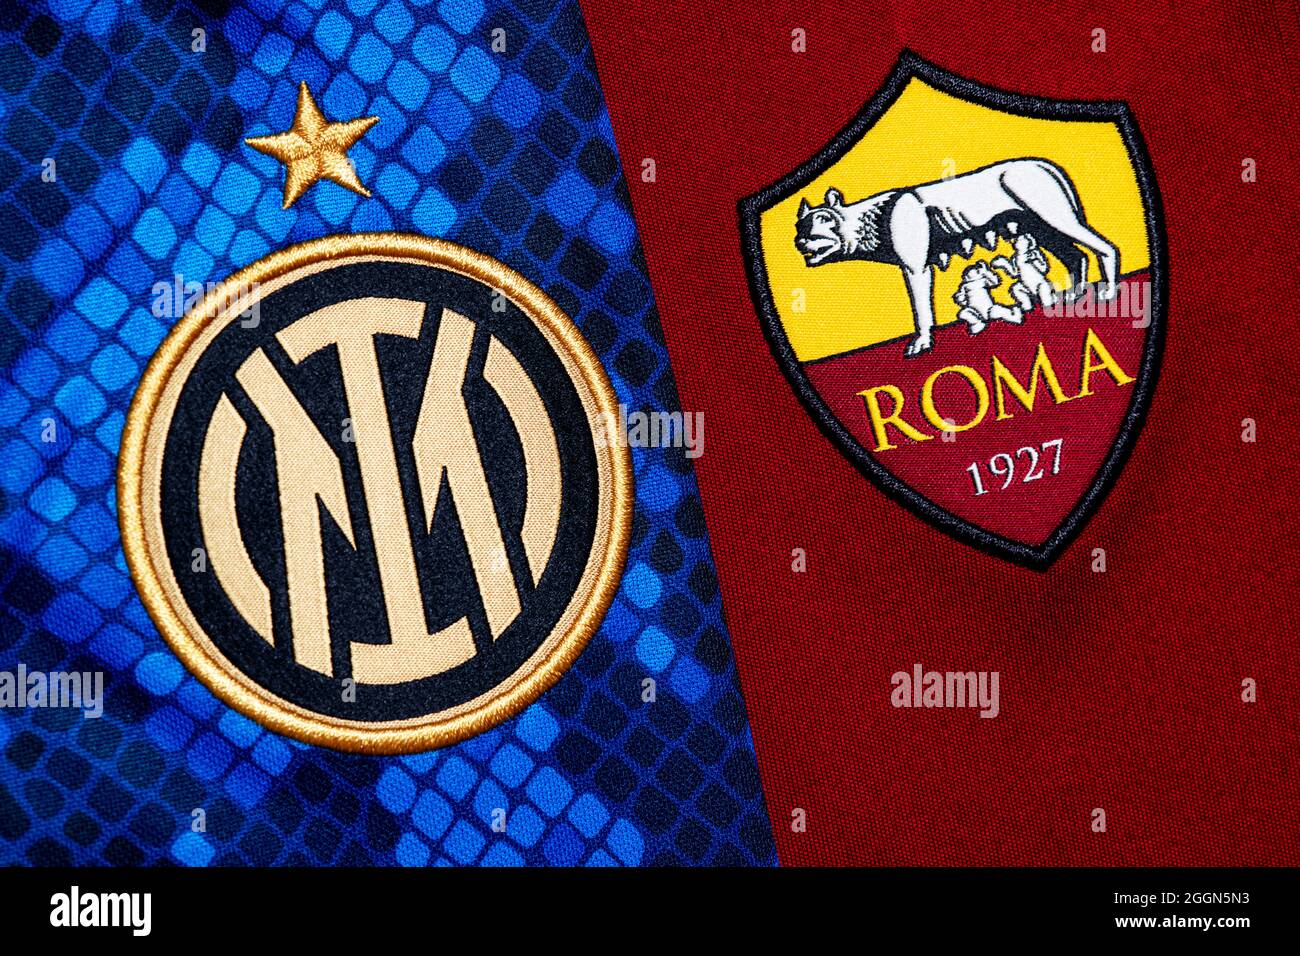 Nahaufnahme des Vereinswappens von Inter & Roma. Stockfoto